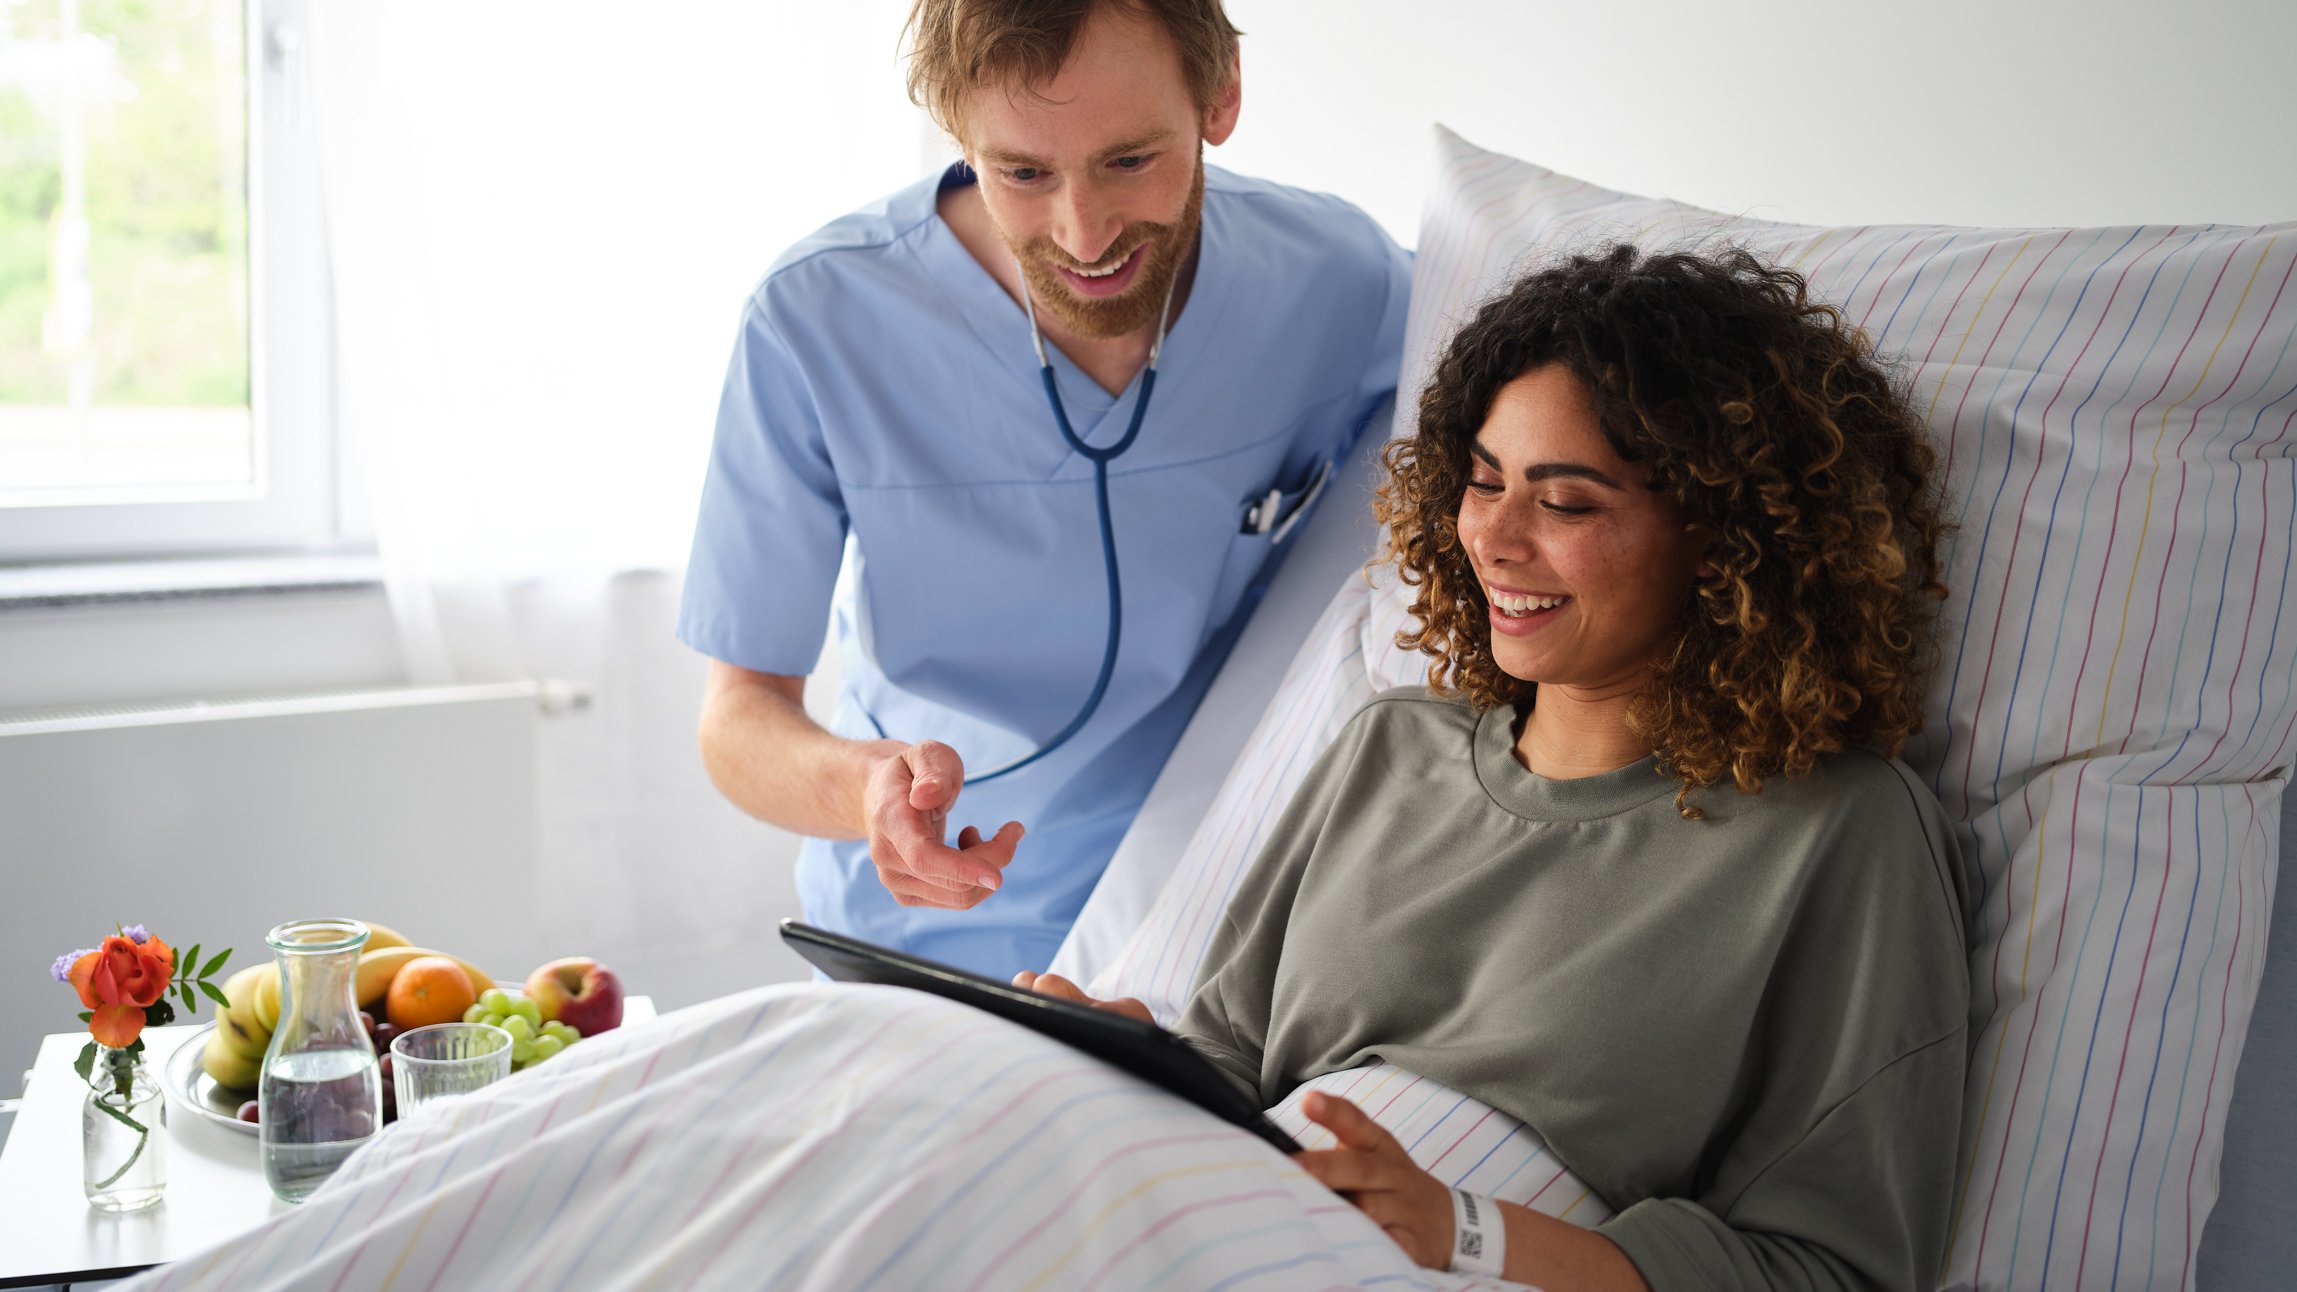 BEWATEC Patienten informieren | Pfleger zeigt Patientin im Bett etwas auf dem iPad